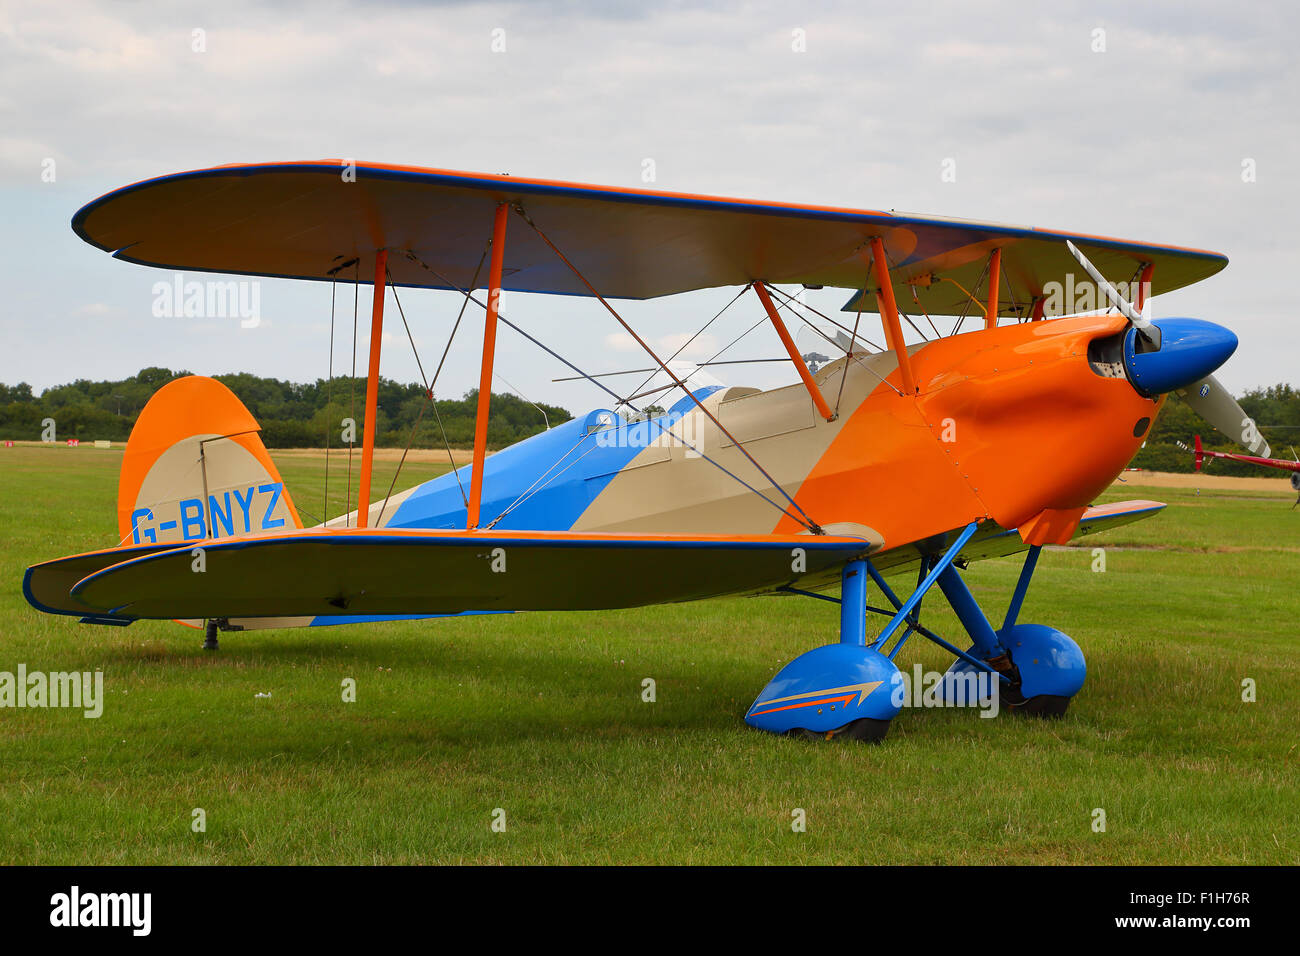 Un vintage Stampe SV4 Bi-avion à Wycombe Air Park, Bucks, Royaume-Uni Banque D'Images